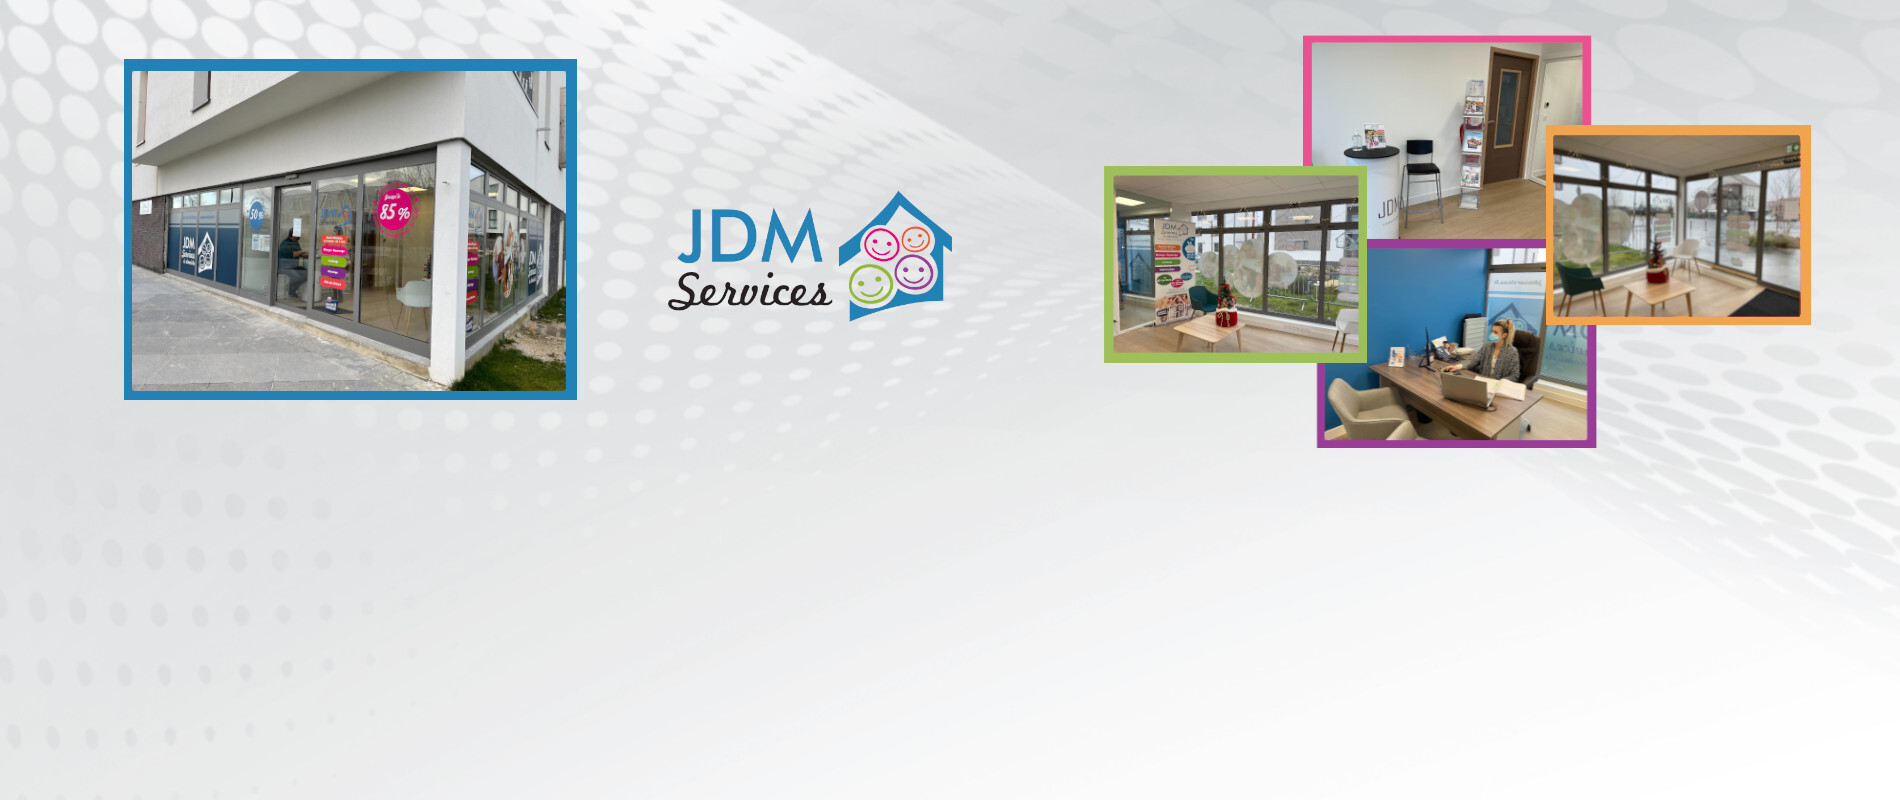 <p style="margin-top: 10rem;">Une toute nouvelle agence JDM Services vient d'ouvrir !<br>Au 13-15 Boulevard de la Plaine à Chanteloup-en-Brie !</p>